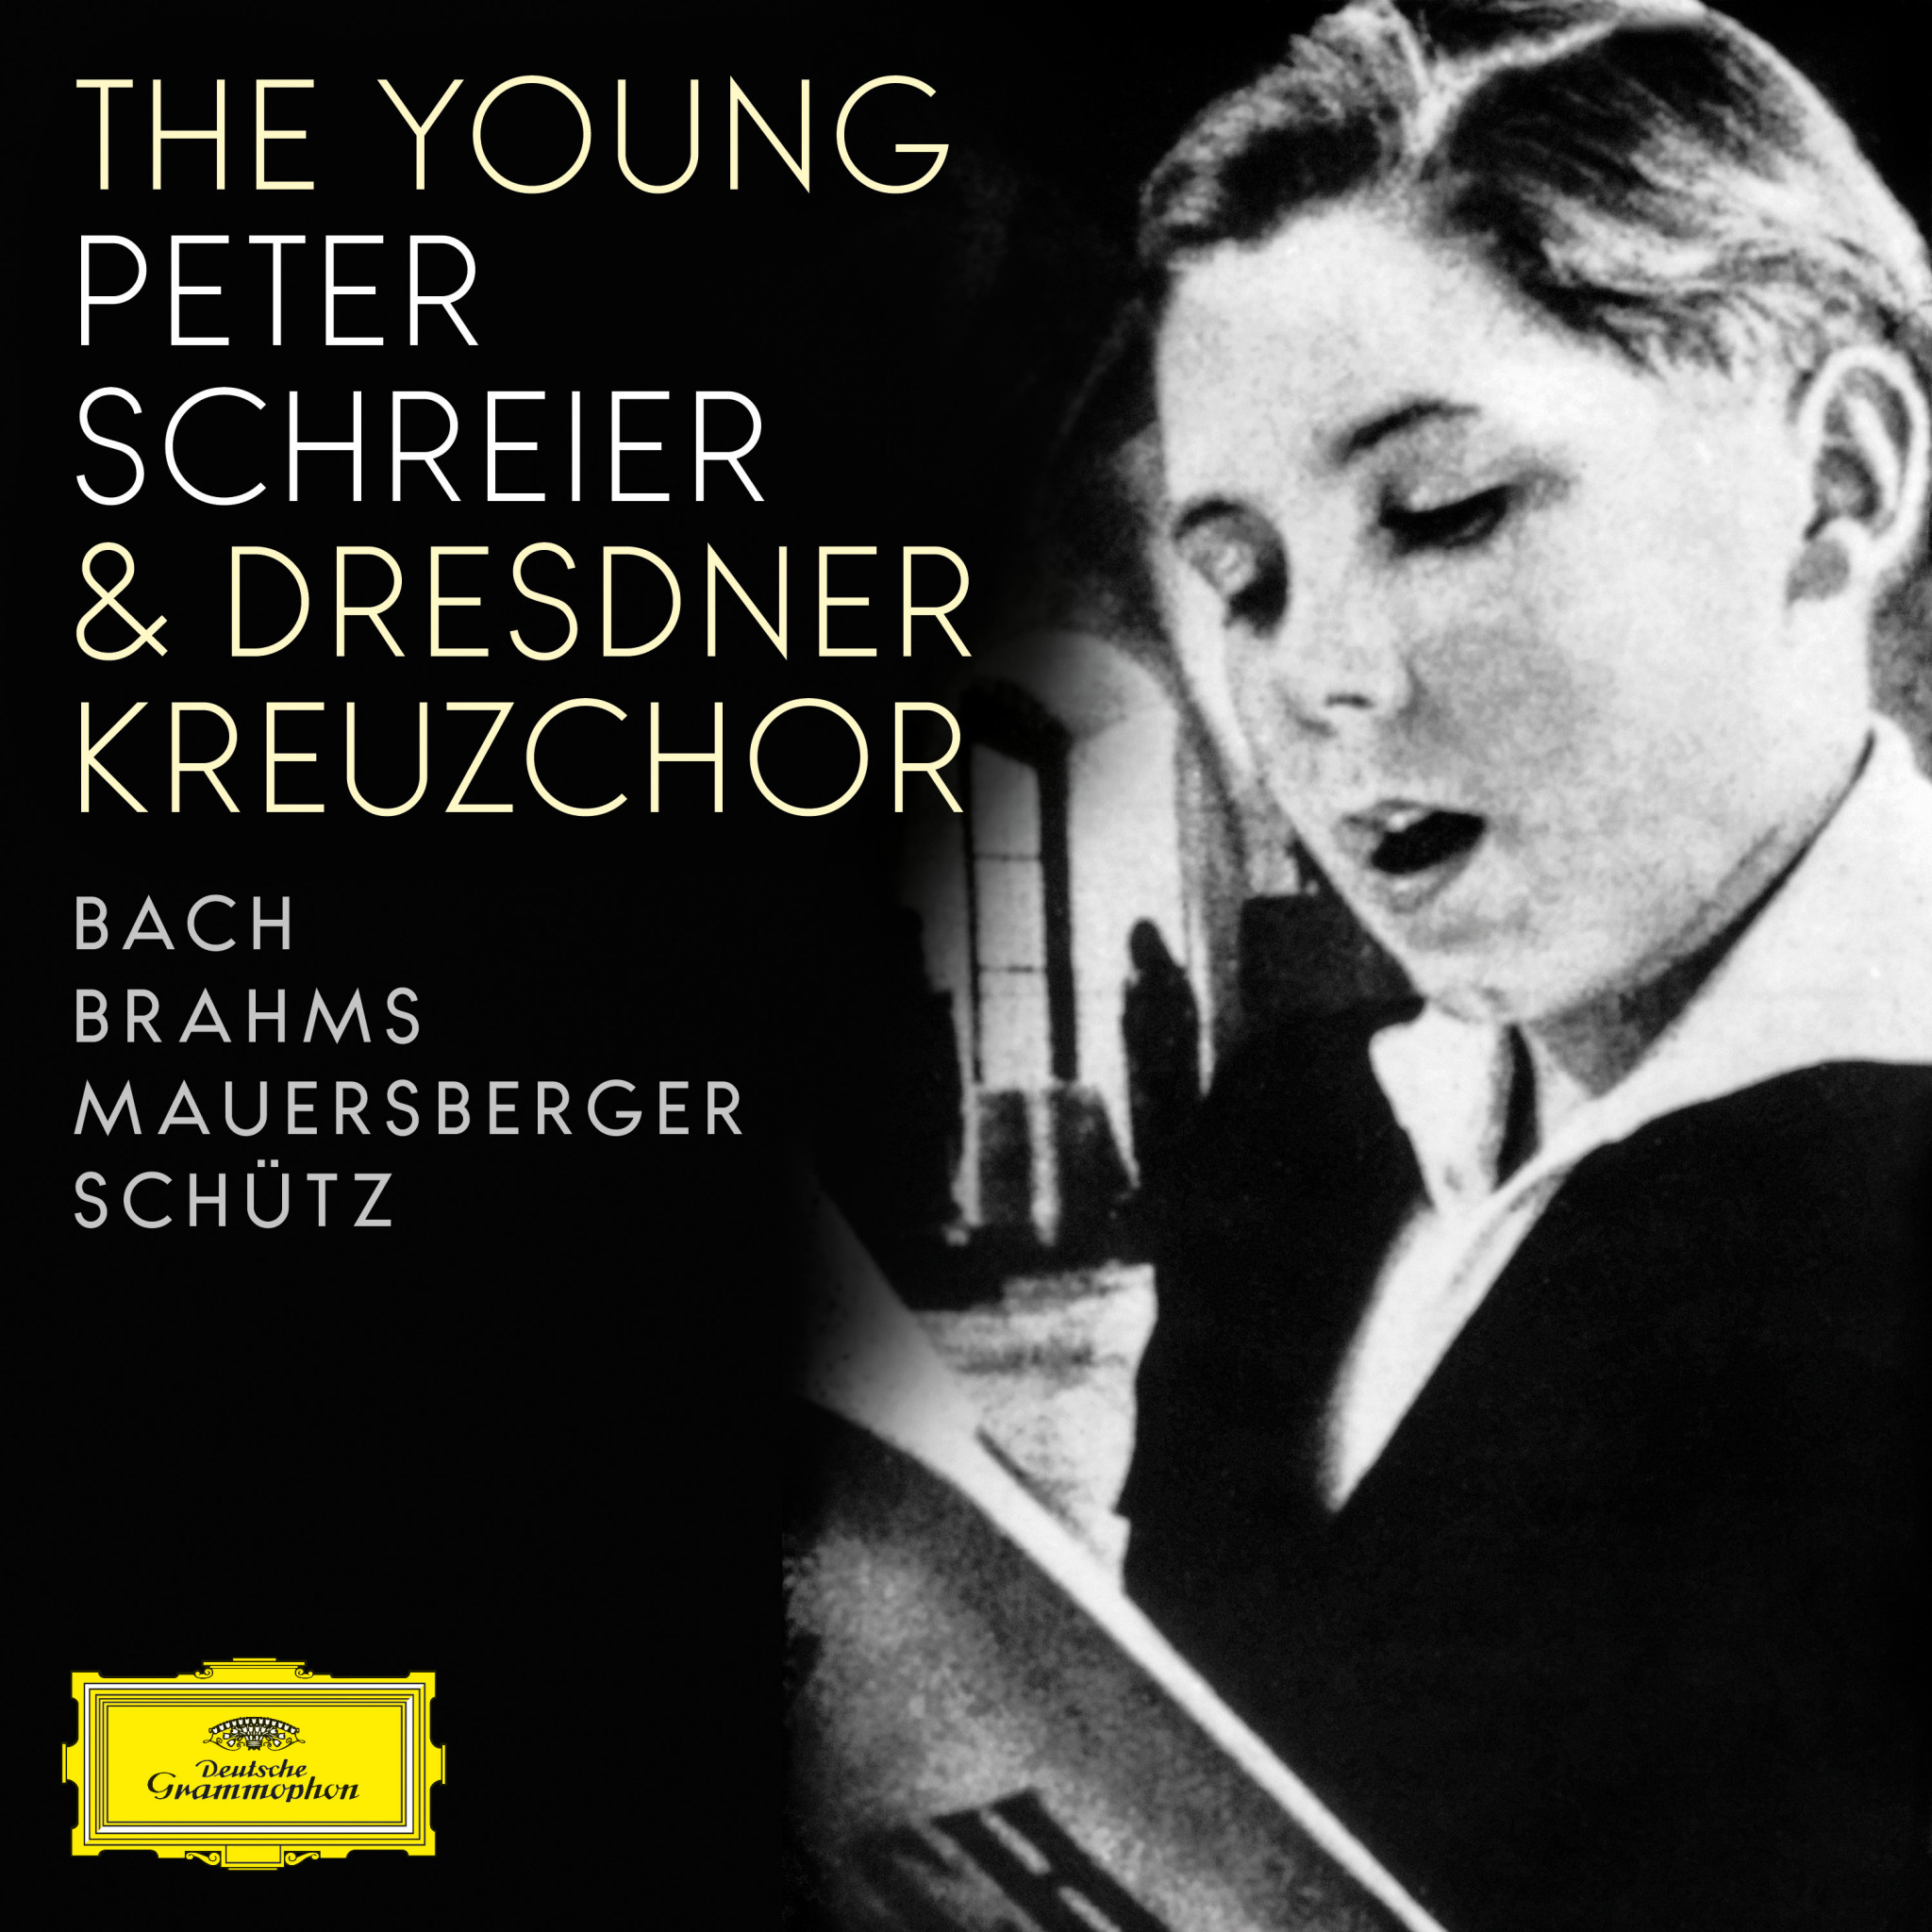 THE YOUNG PETER SCHREIER & DRESDNER KREUZCHOR